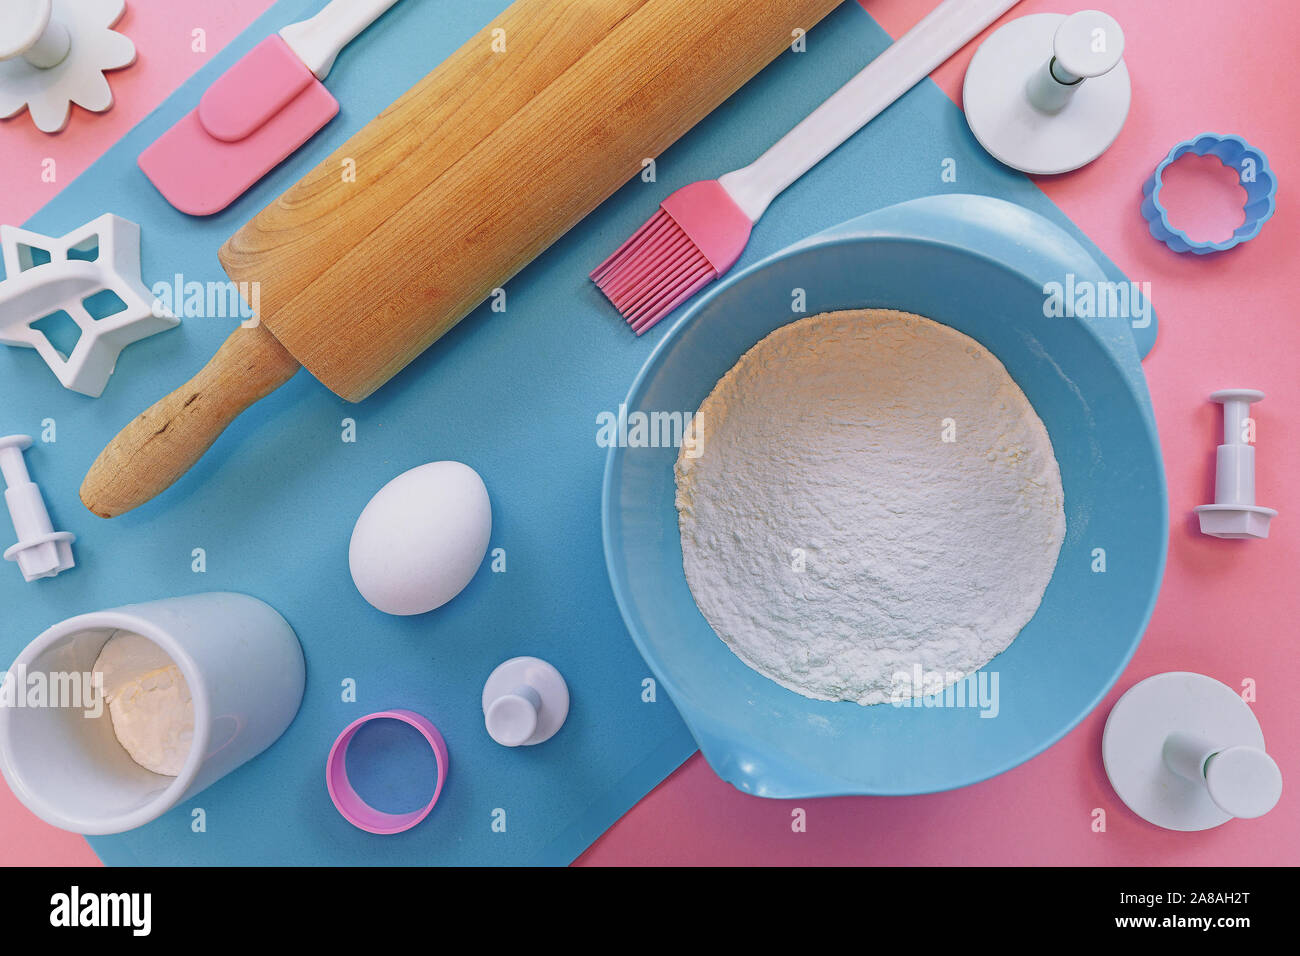 Vista superiore piatta con laici carino rosa e blu di utensili di cottura come la laminazione di legno pin, cookie cutter o ingredienti come la farina in un recipiente e uovo Foto Stock